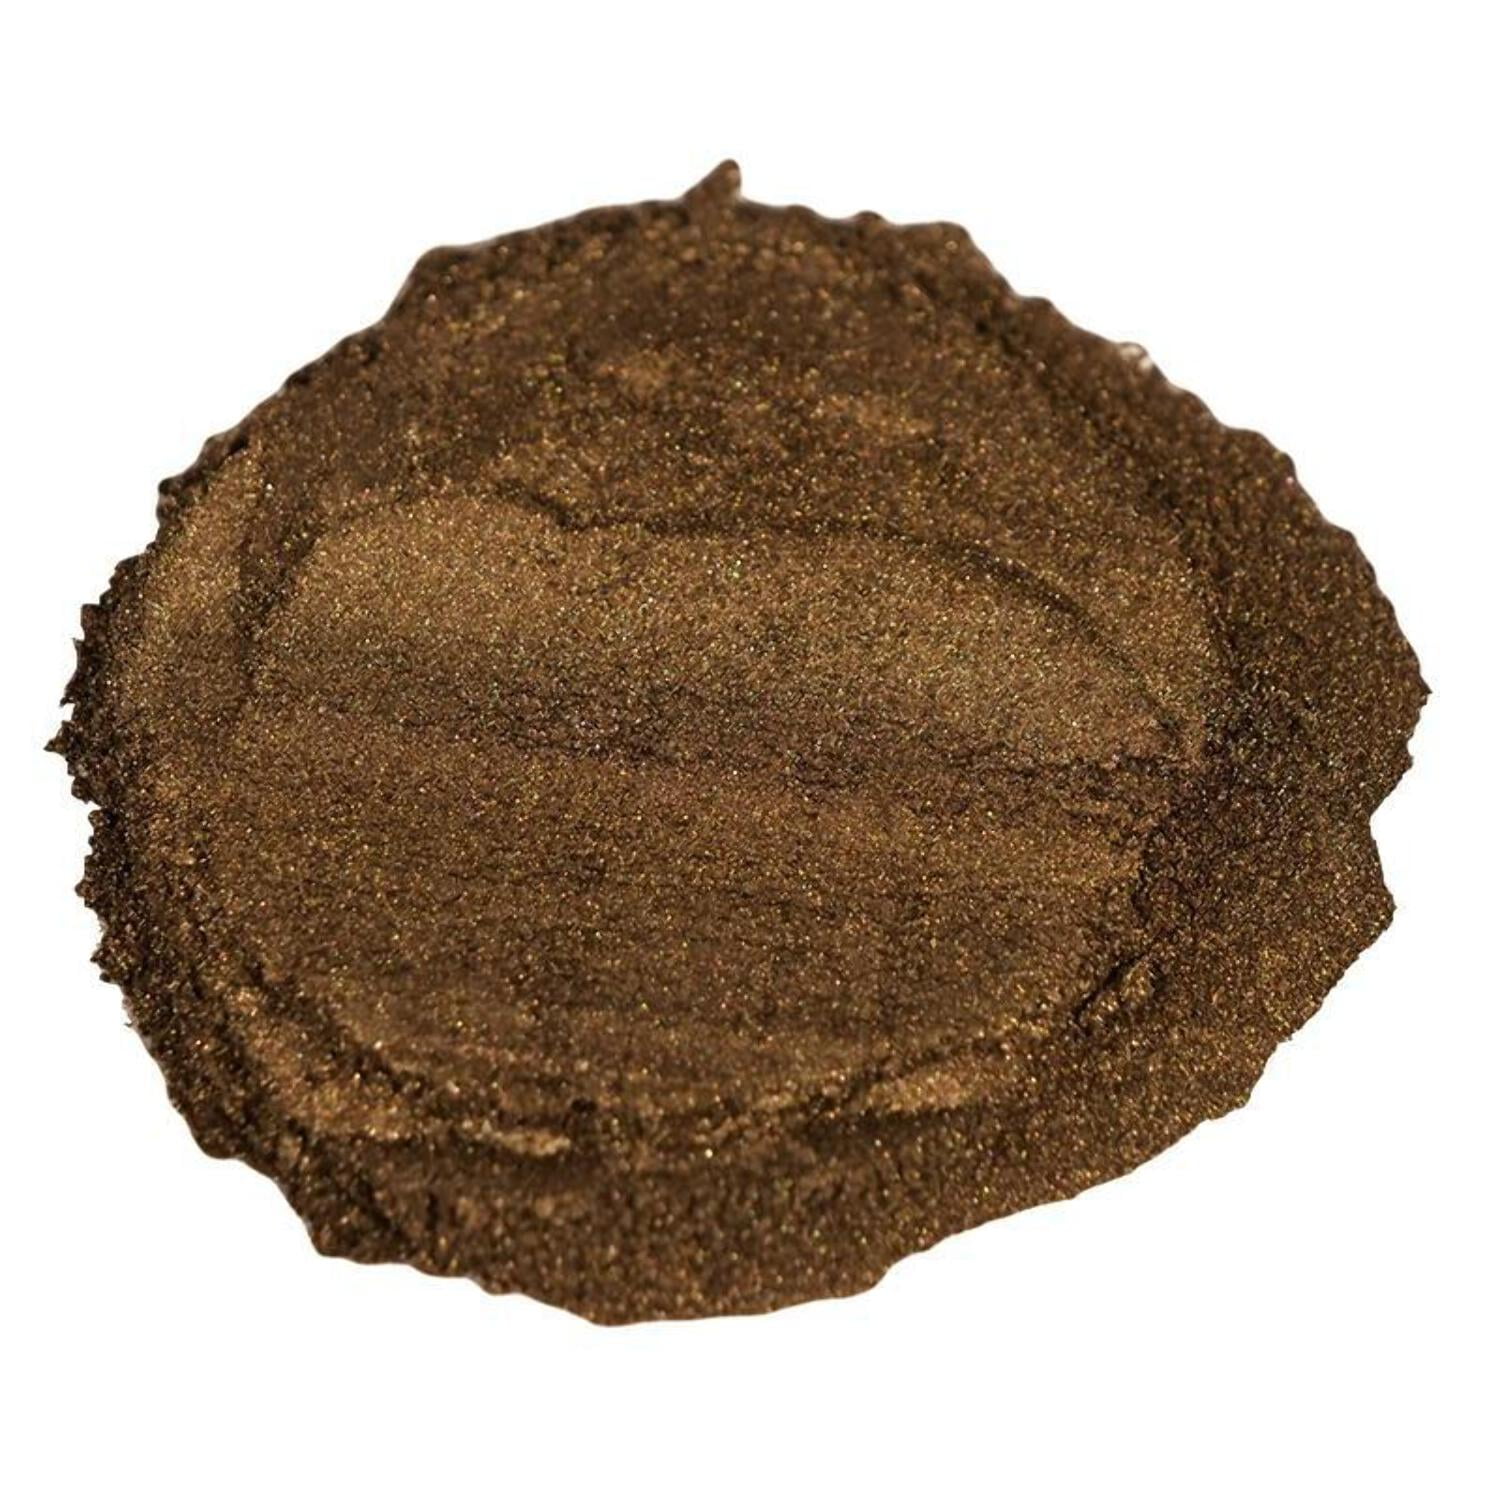 Copper Penny - Professional grade mica powder pigment – The Epoxy Resin  Store